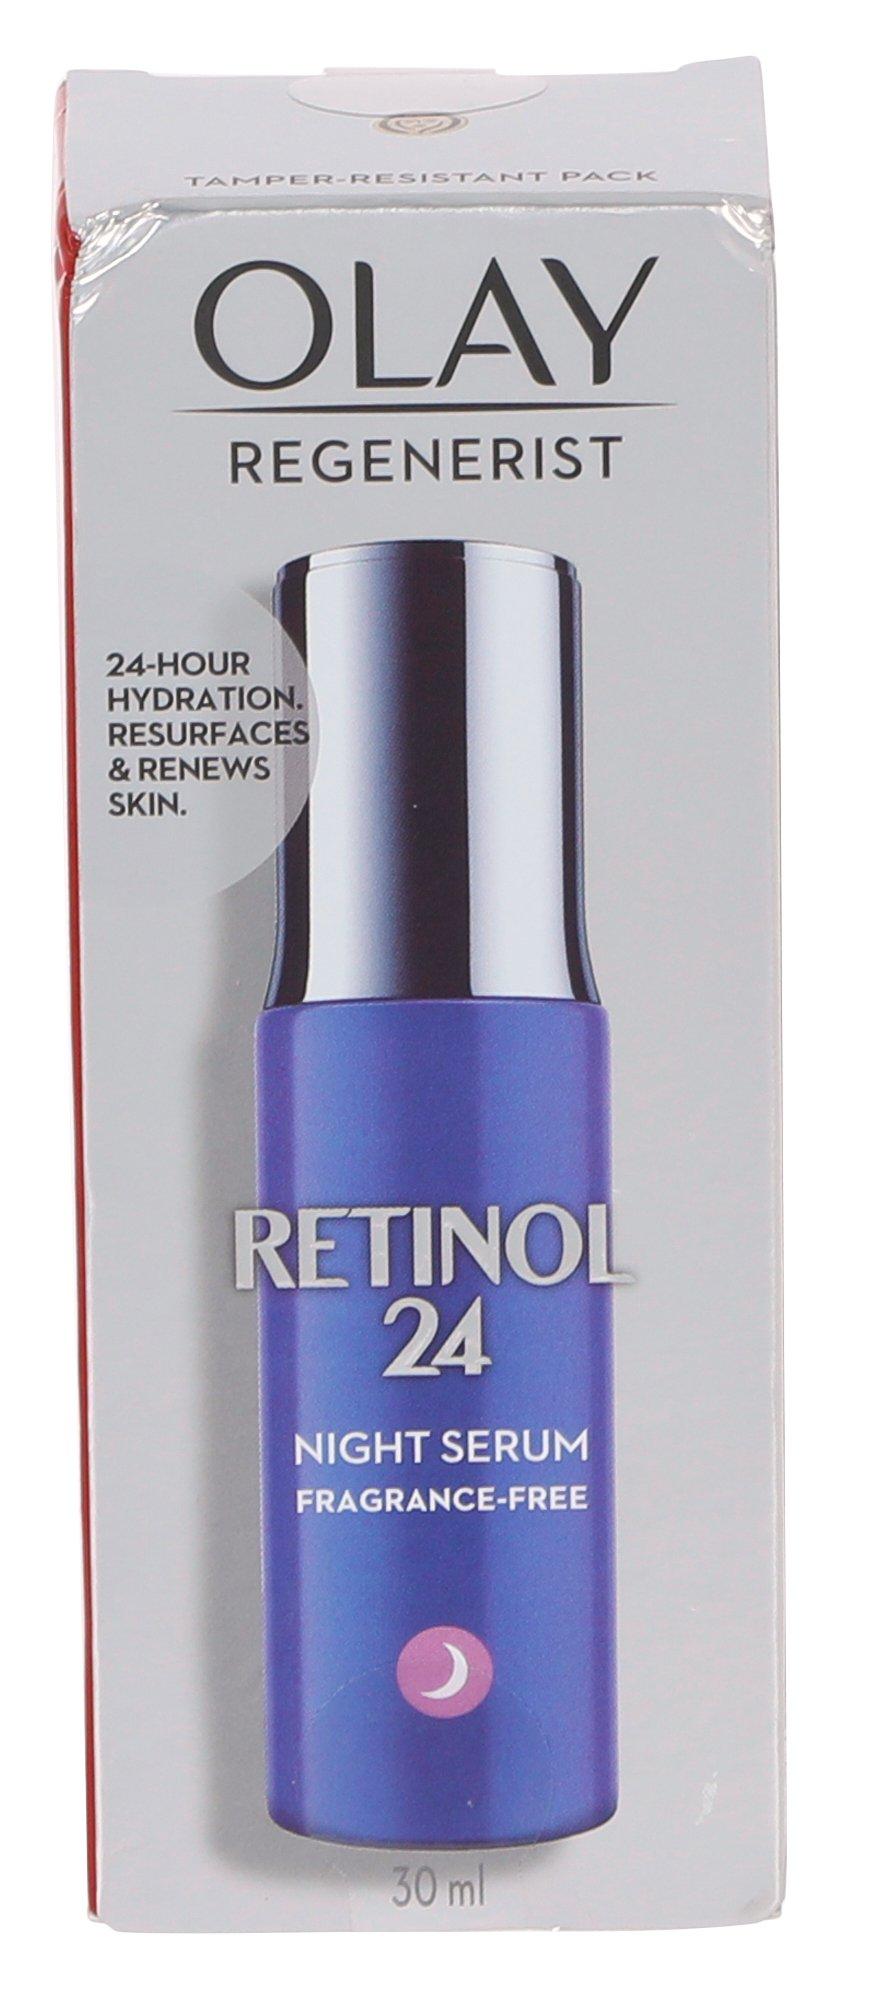 Regenerist Retinol 24 Night Serum